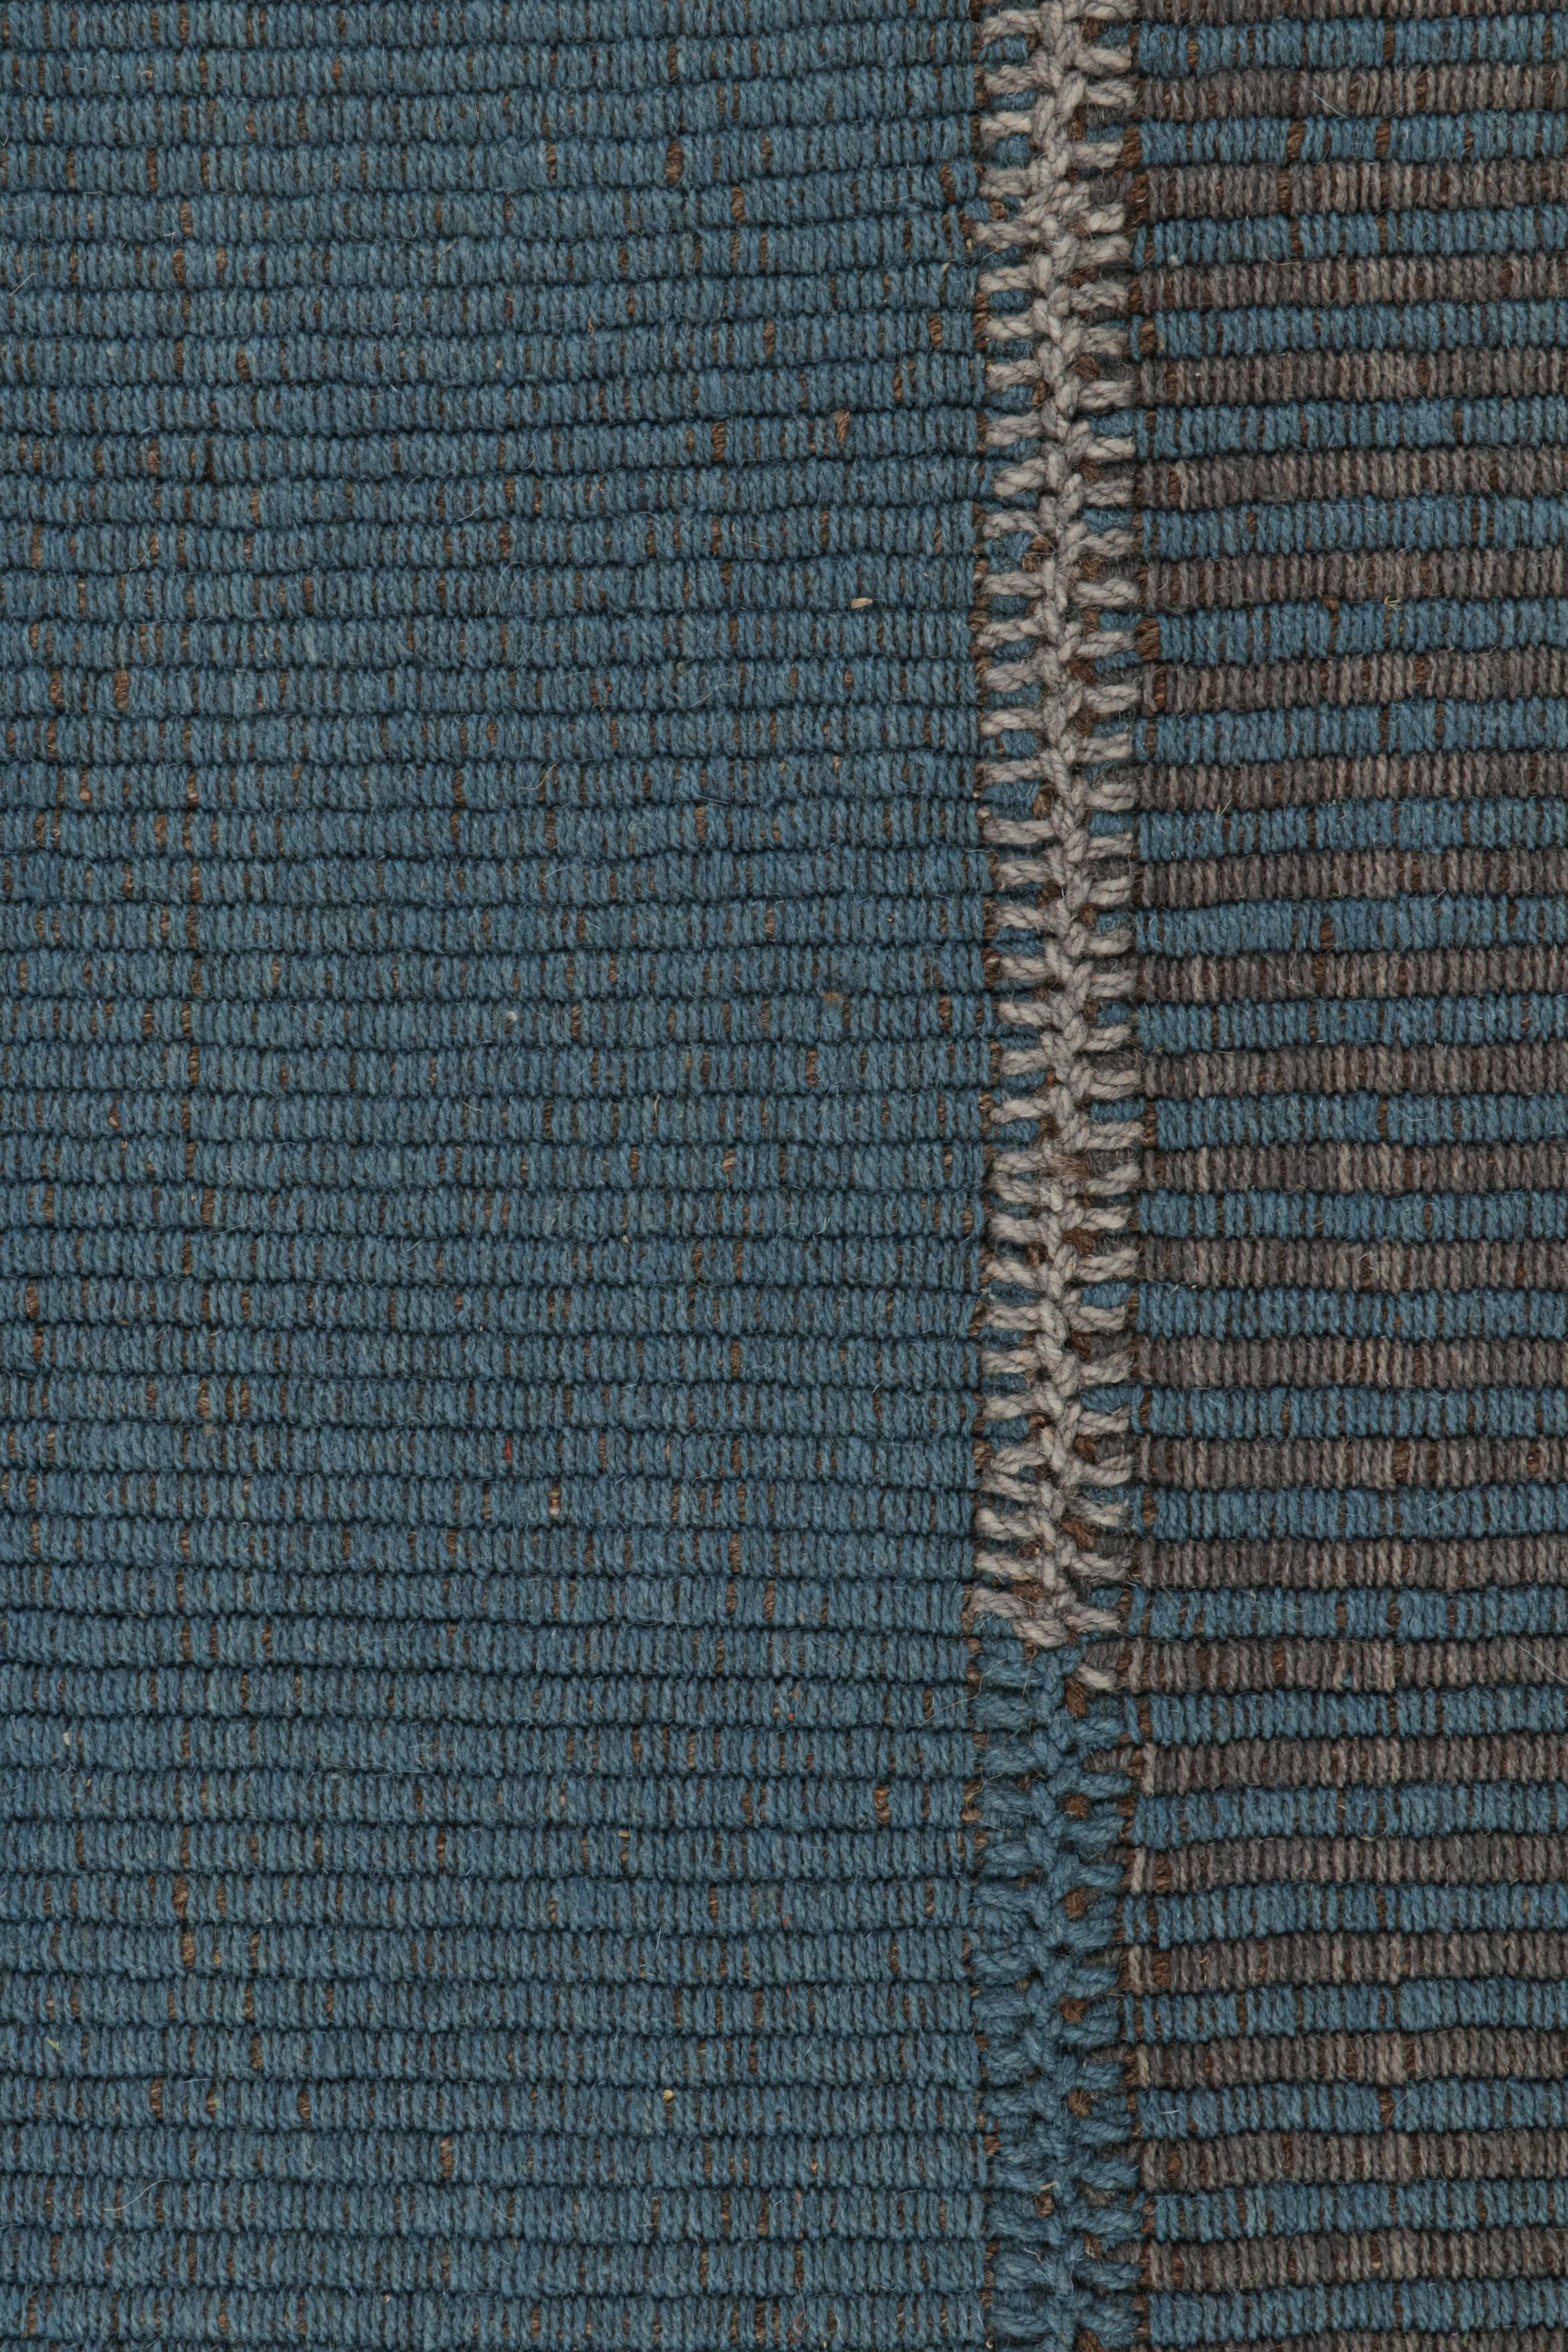 Moderne Rug & Kilim's Contemporary Kilim in Blue and Gray Stripes with Brown Accents (Kilim contemporain à rayures bleues et grises avec des accents bruns) en vente